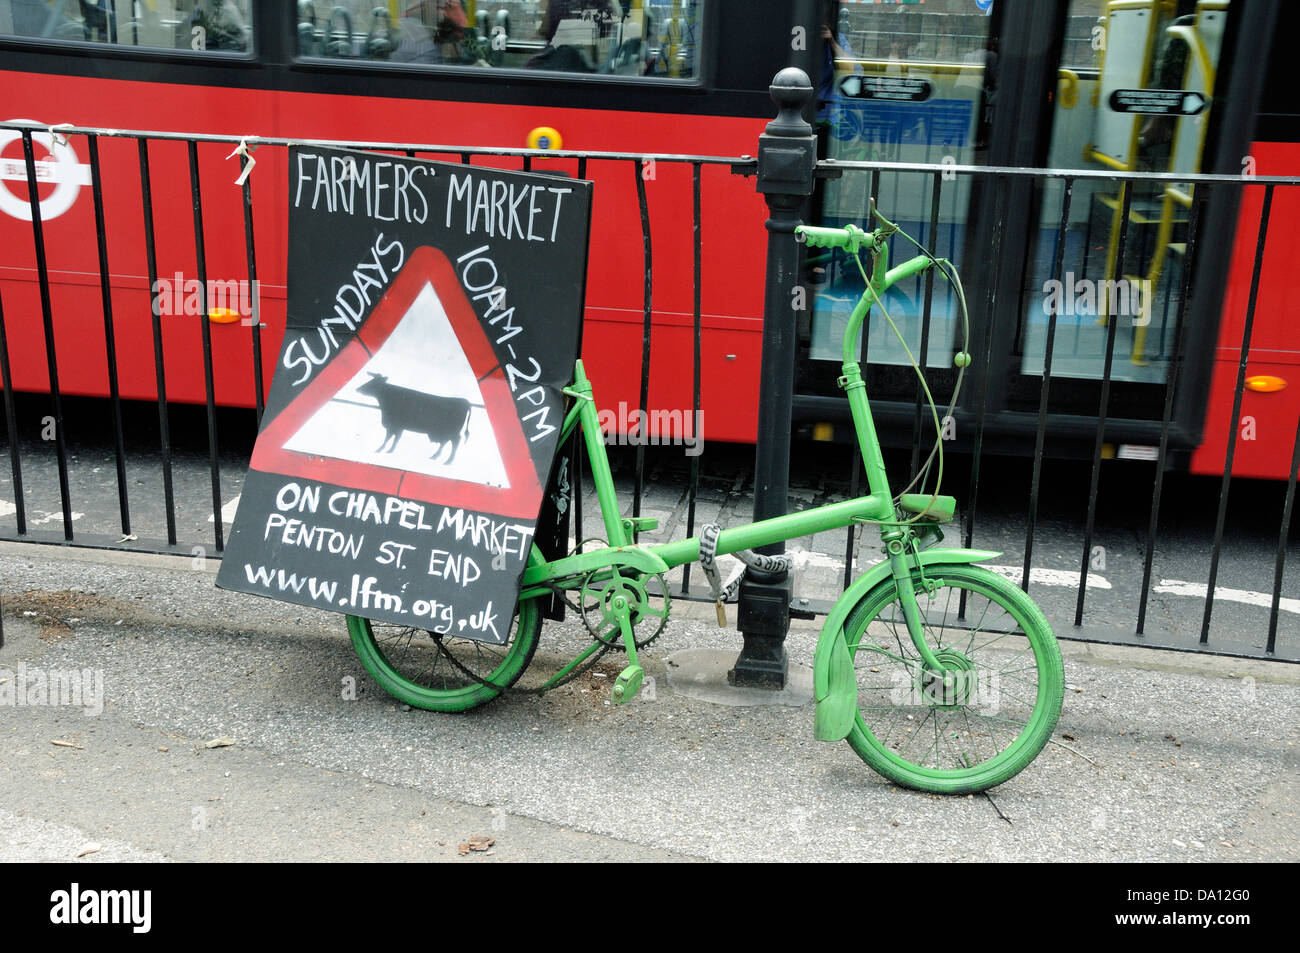 Marché de producteurs enseigne apposée à vélo à l'aide d'un autobus qui passe, Département du Nord-Ouest, England, UK Banque D'Images